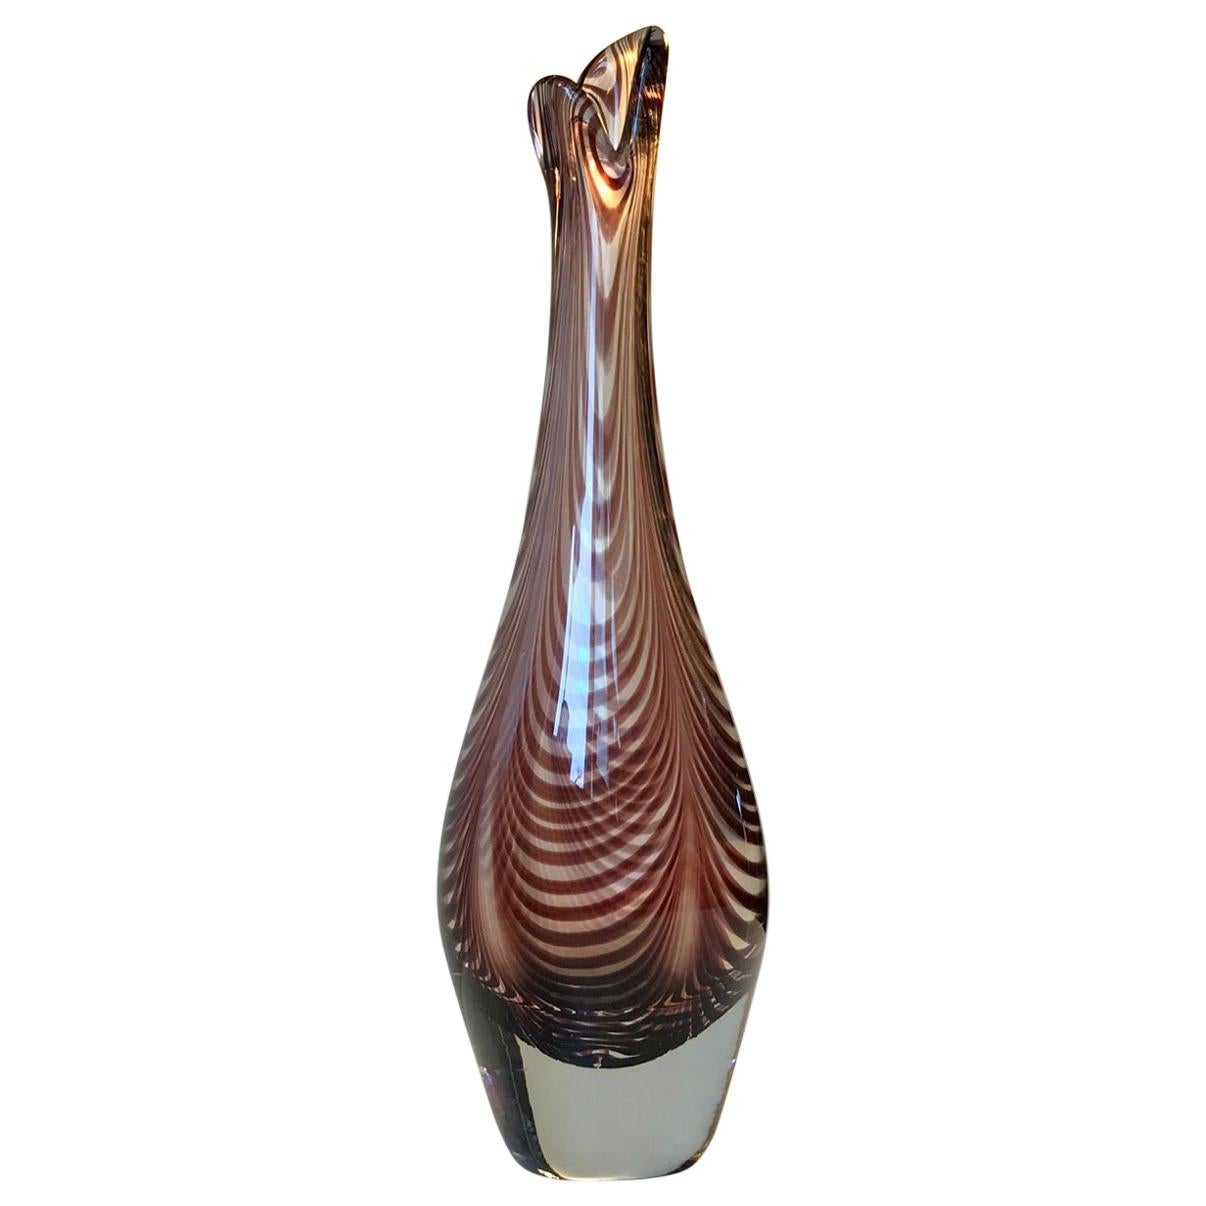 Art Glass Duckling Vase by Per Lütken for Kastrup/Holmegaard, 1950s